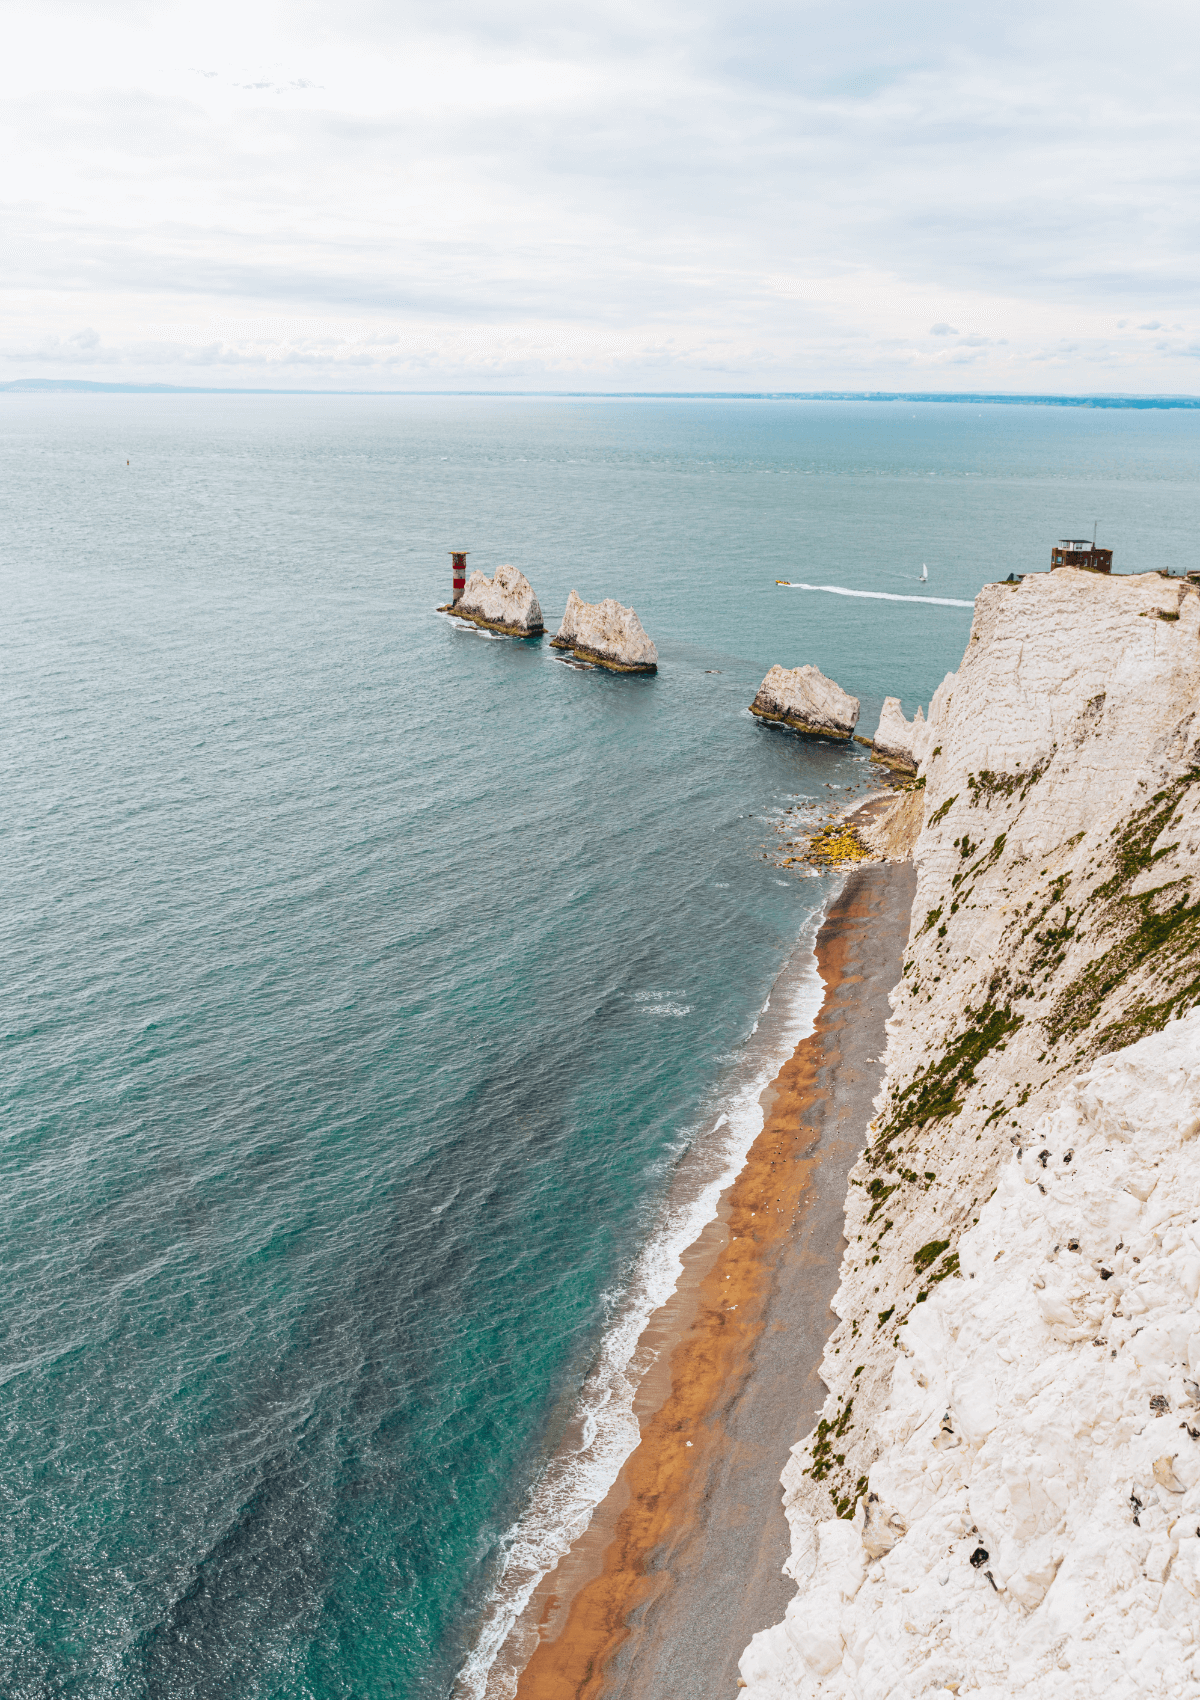 Isle of Wight coastline